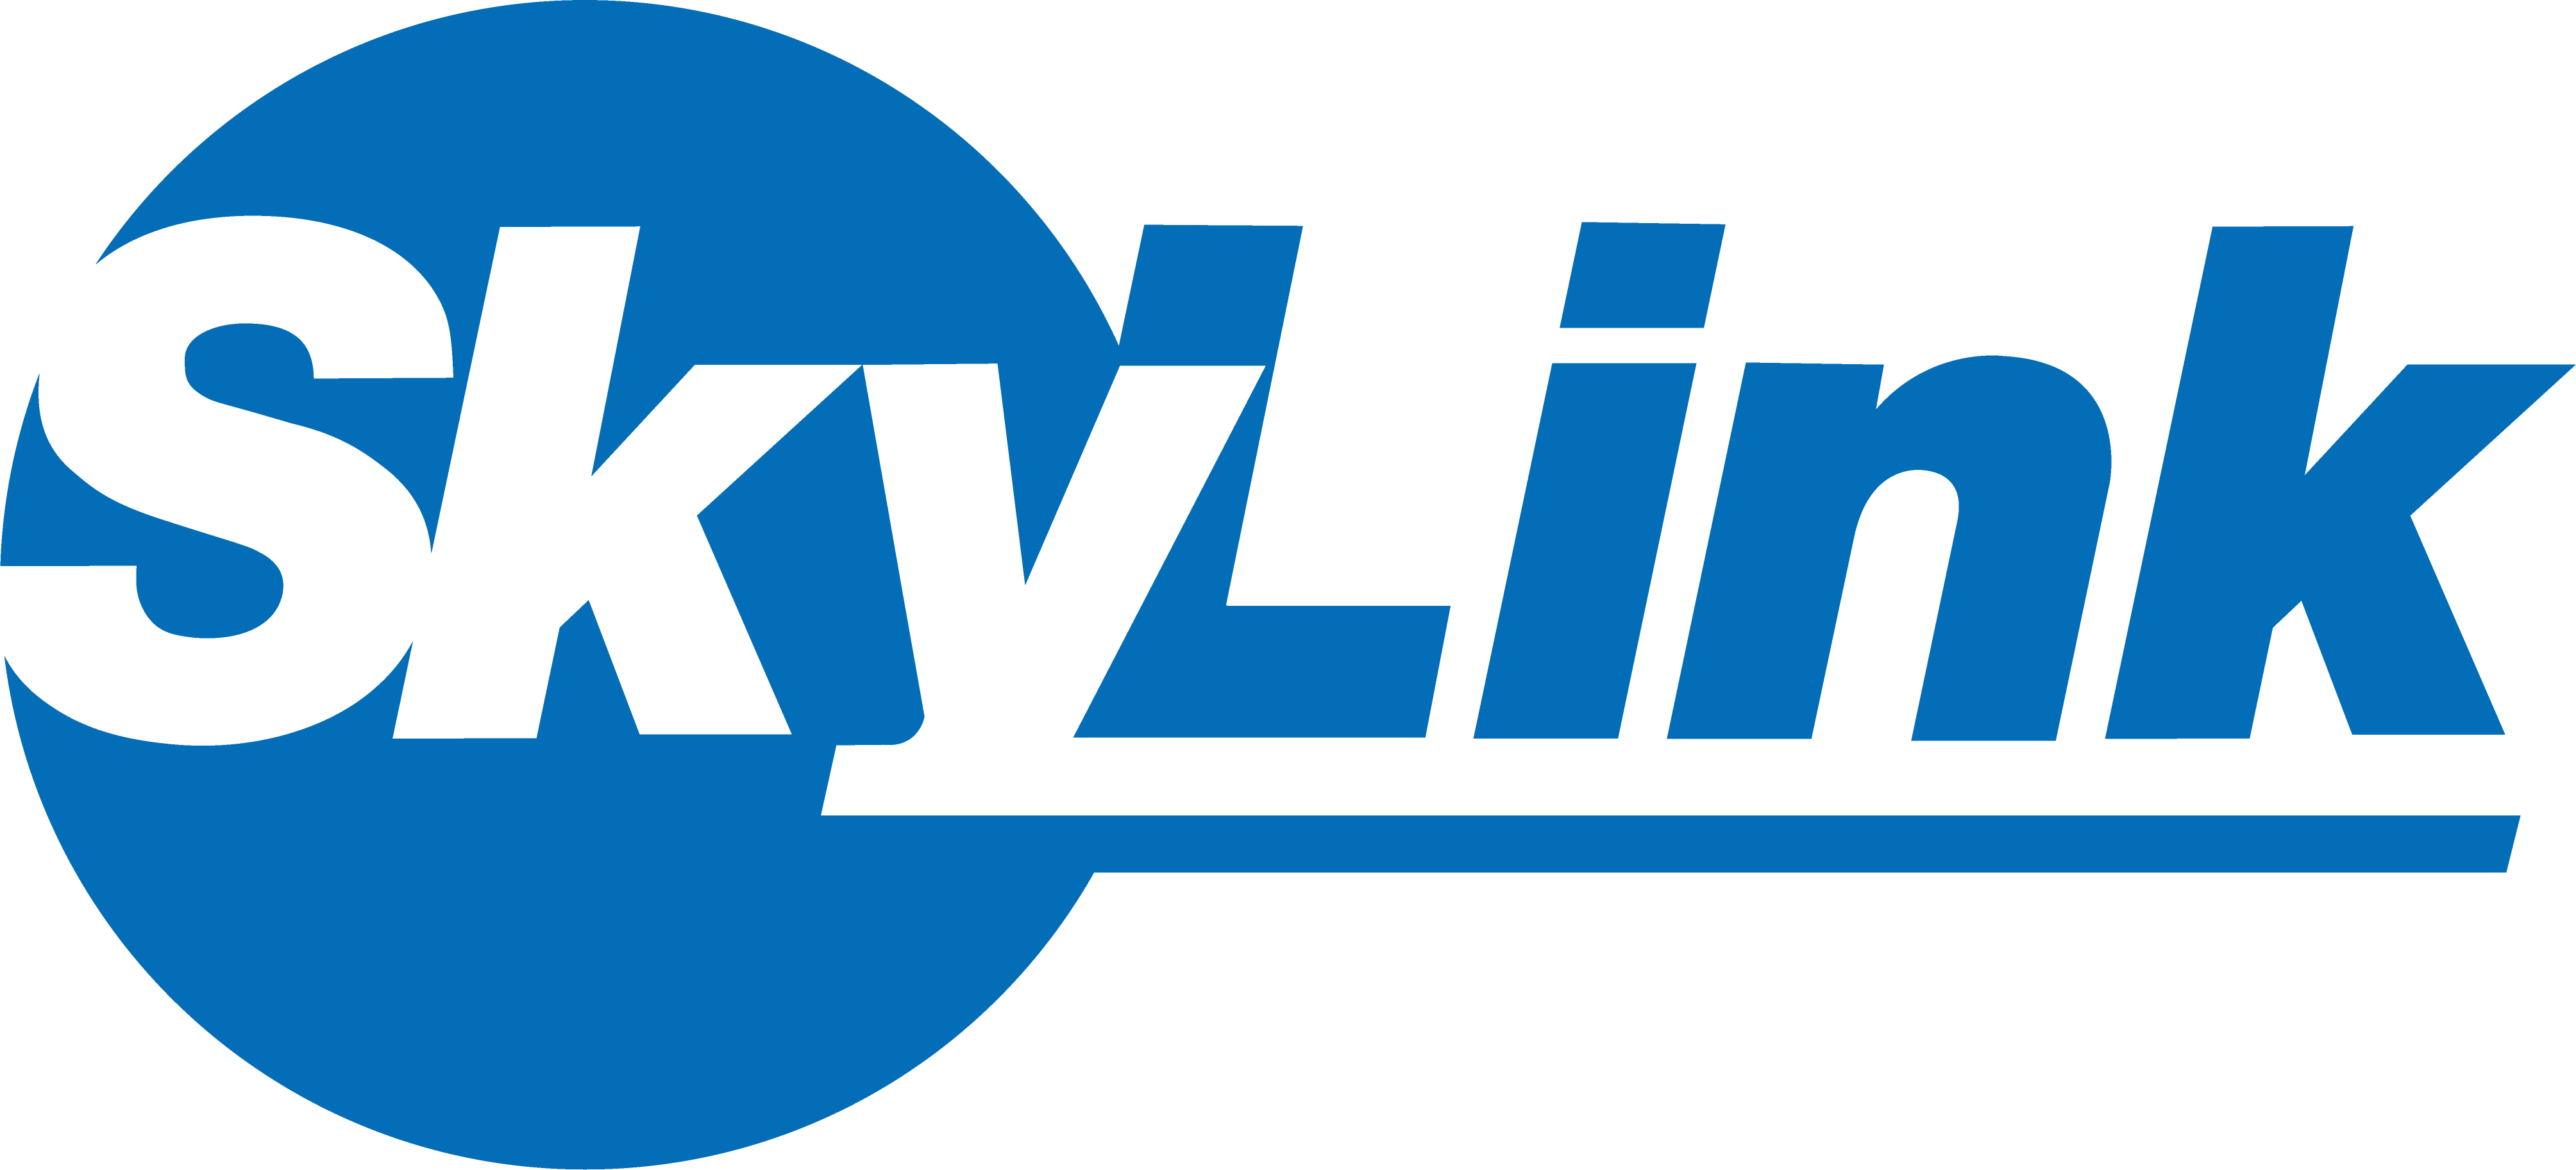 SkyLink Japan ロゴ